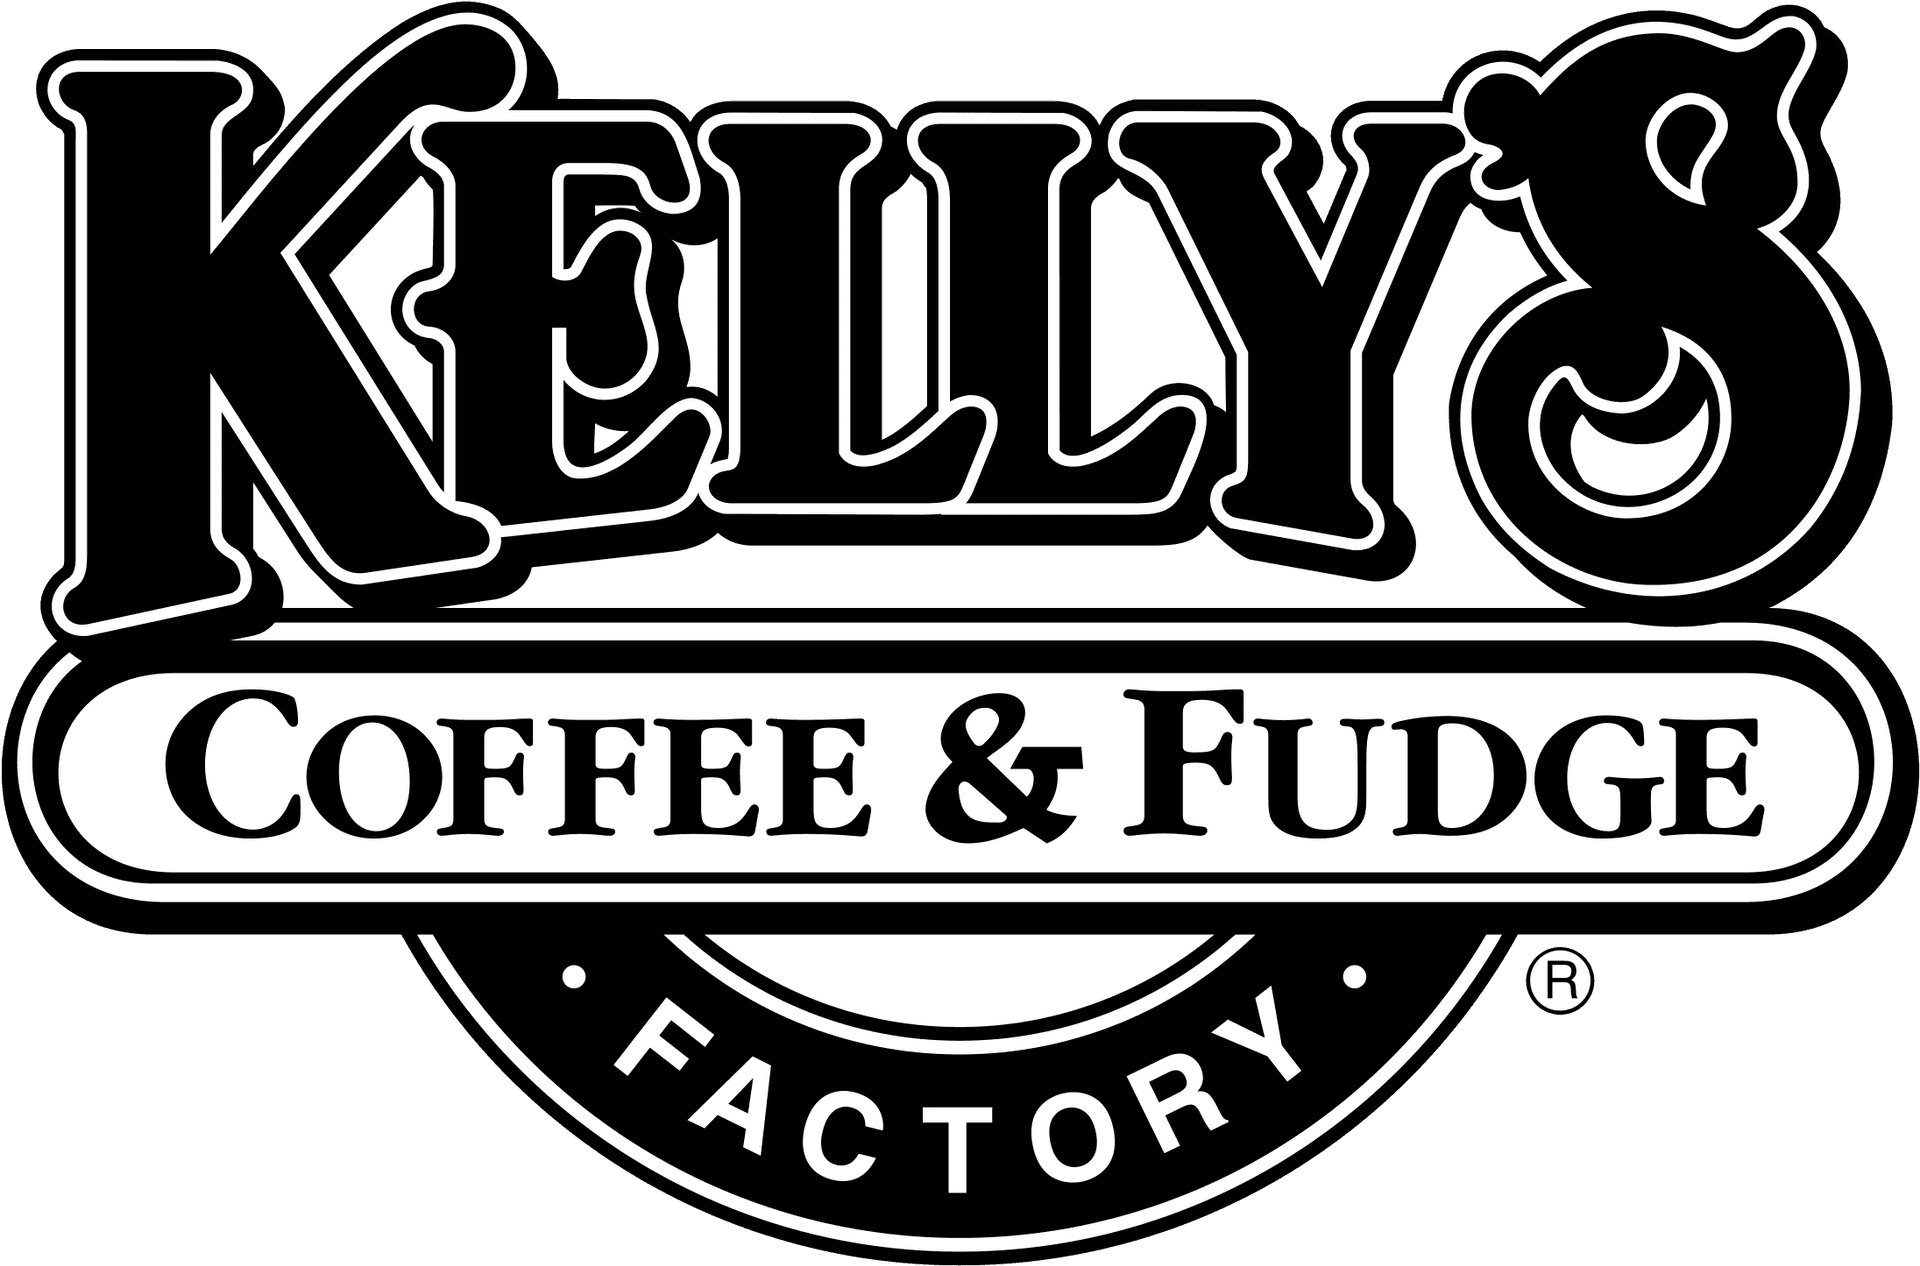 Kellys Coffee Fudge Factory Logo PNG